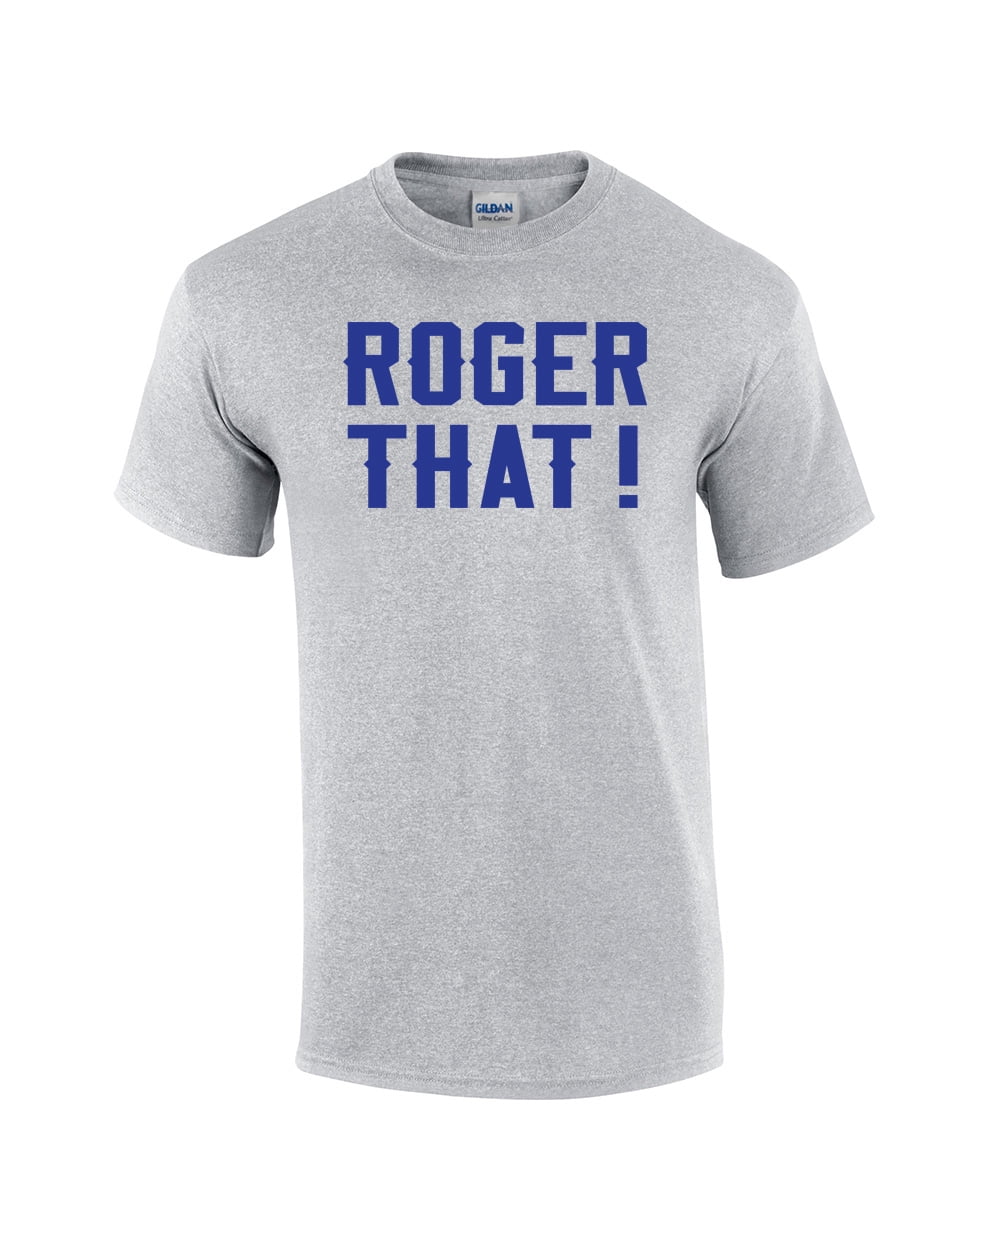 Hunger Viewer Simplicity Roger That Comedic Short Sleeve T-shirt-Sportsgray-6Xl - Walmart.com